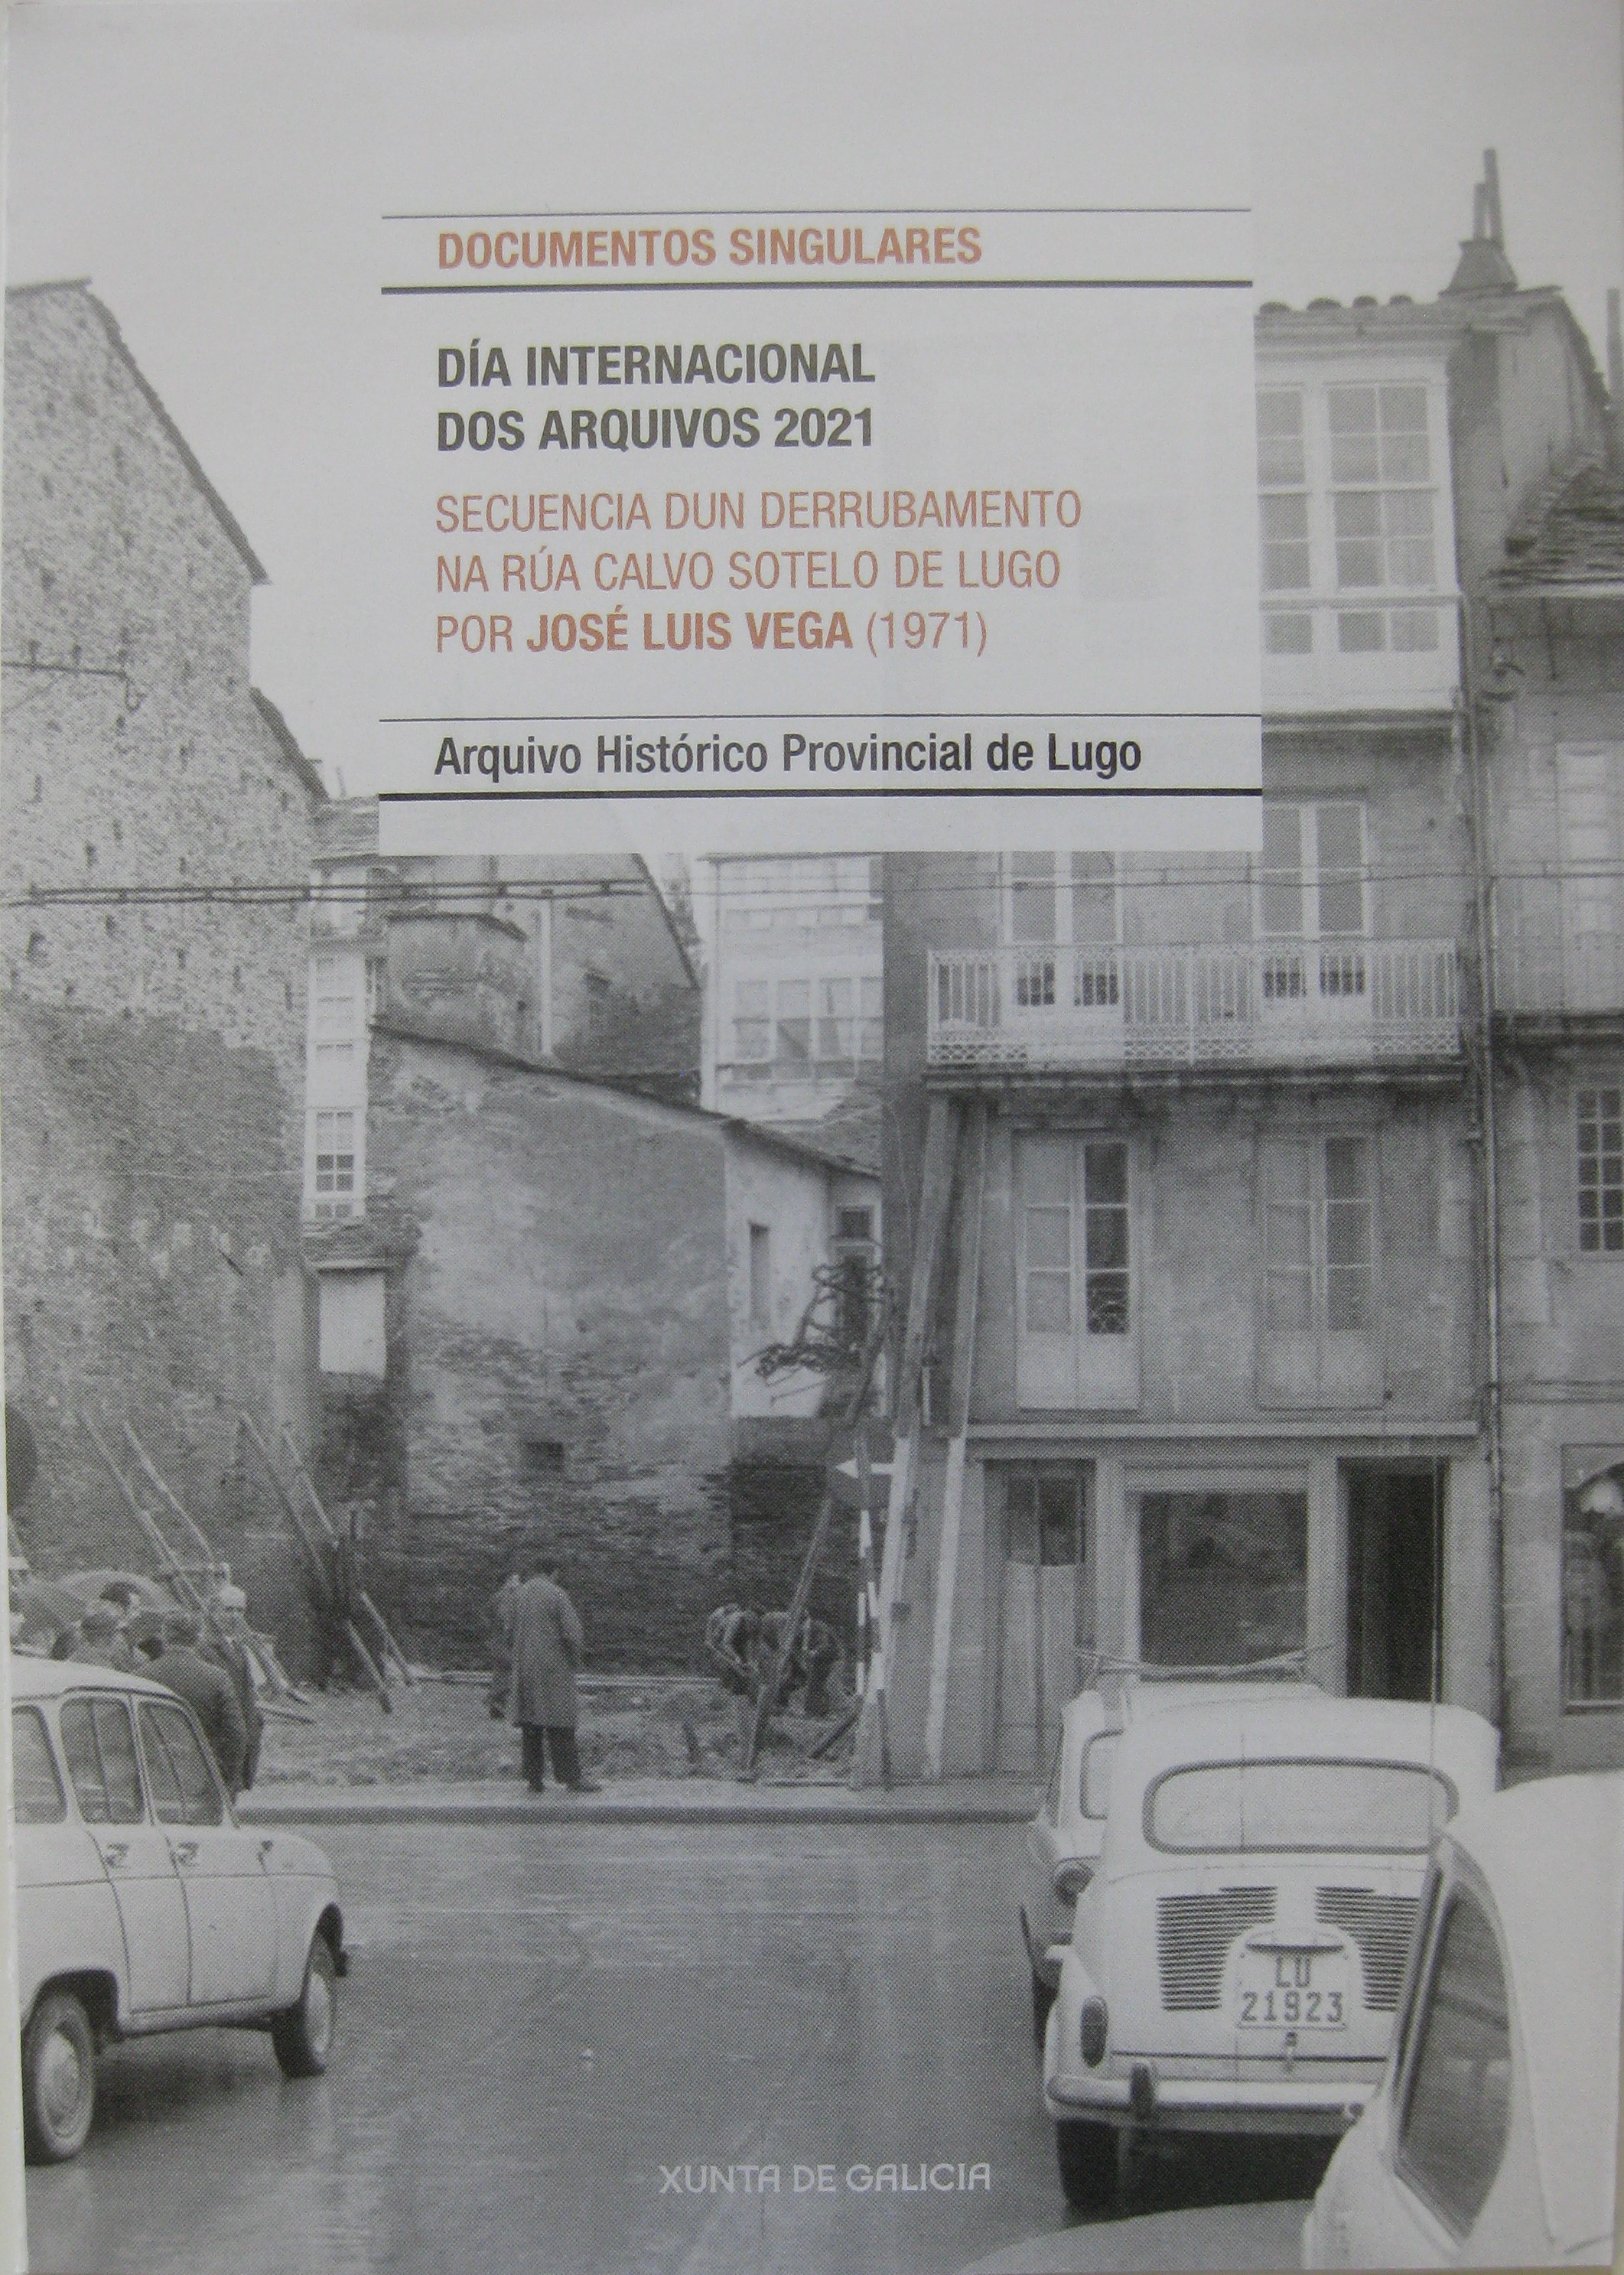 Secuencia de un derrumbamiento en la calle Calvo sotelo de Lugo, 1971. José Luis Vega